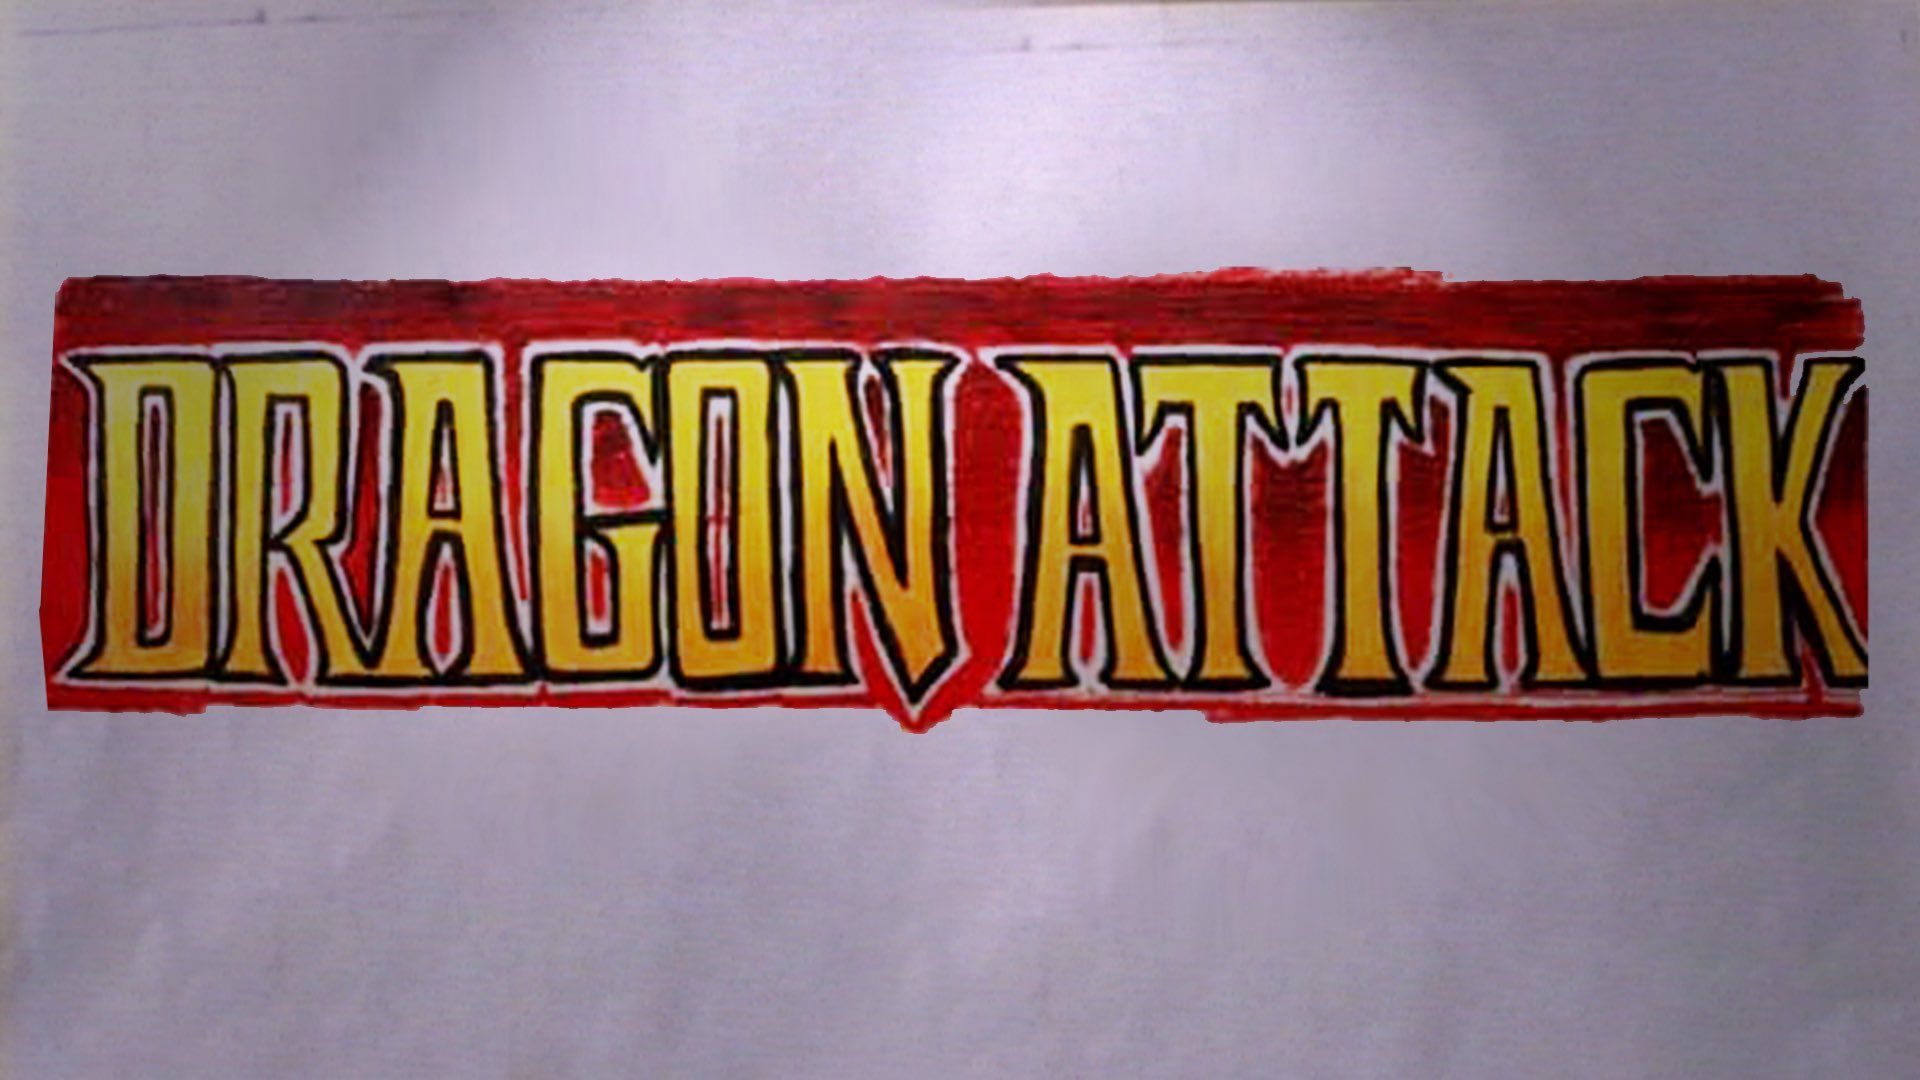 Отмененный набросок логотипа Dragon Attack. Источник: твиттер